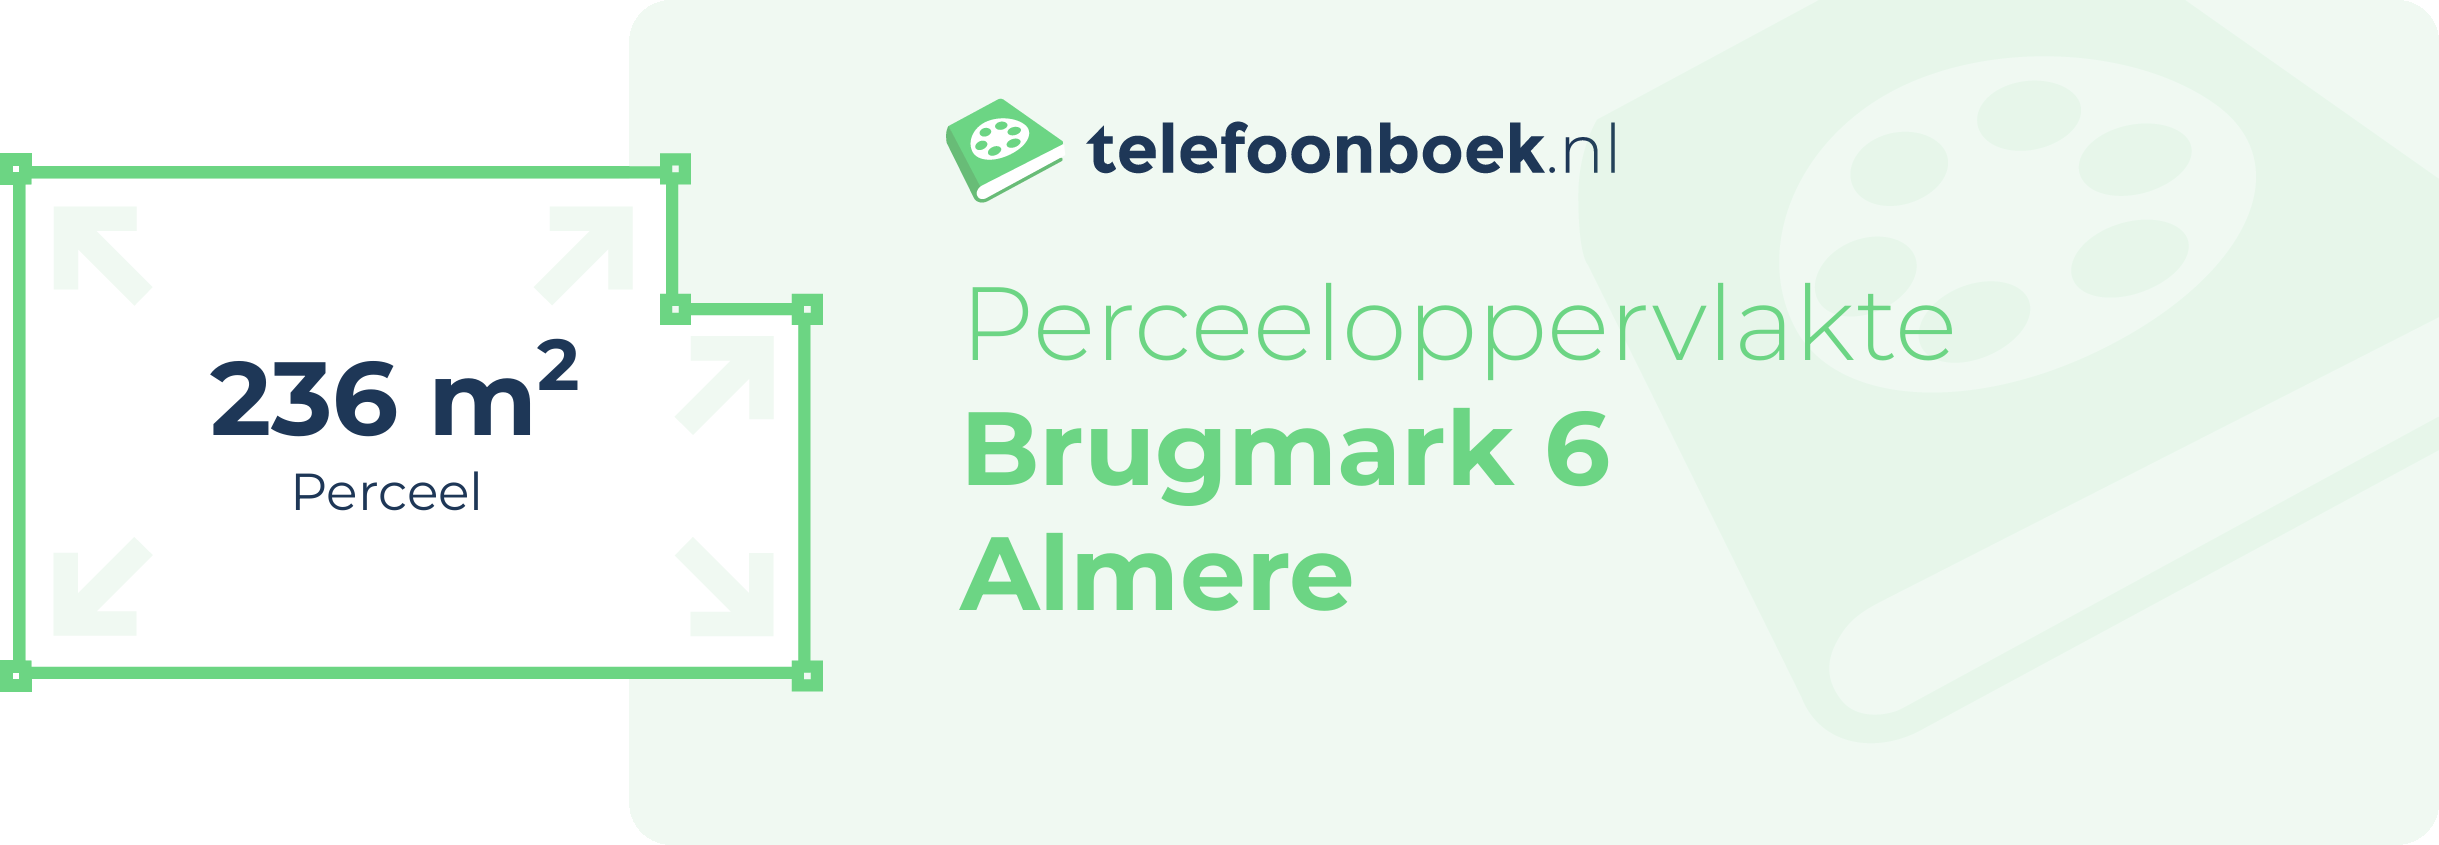 Perceeloppervlakte Brugmark 6 Almere